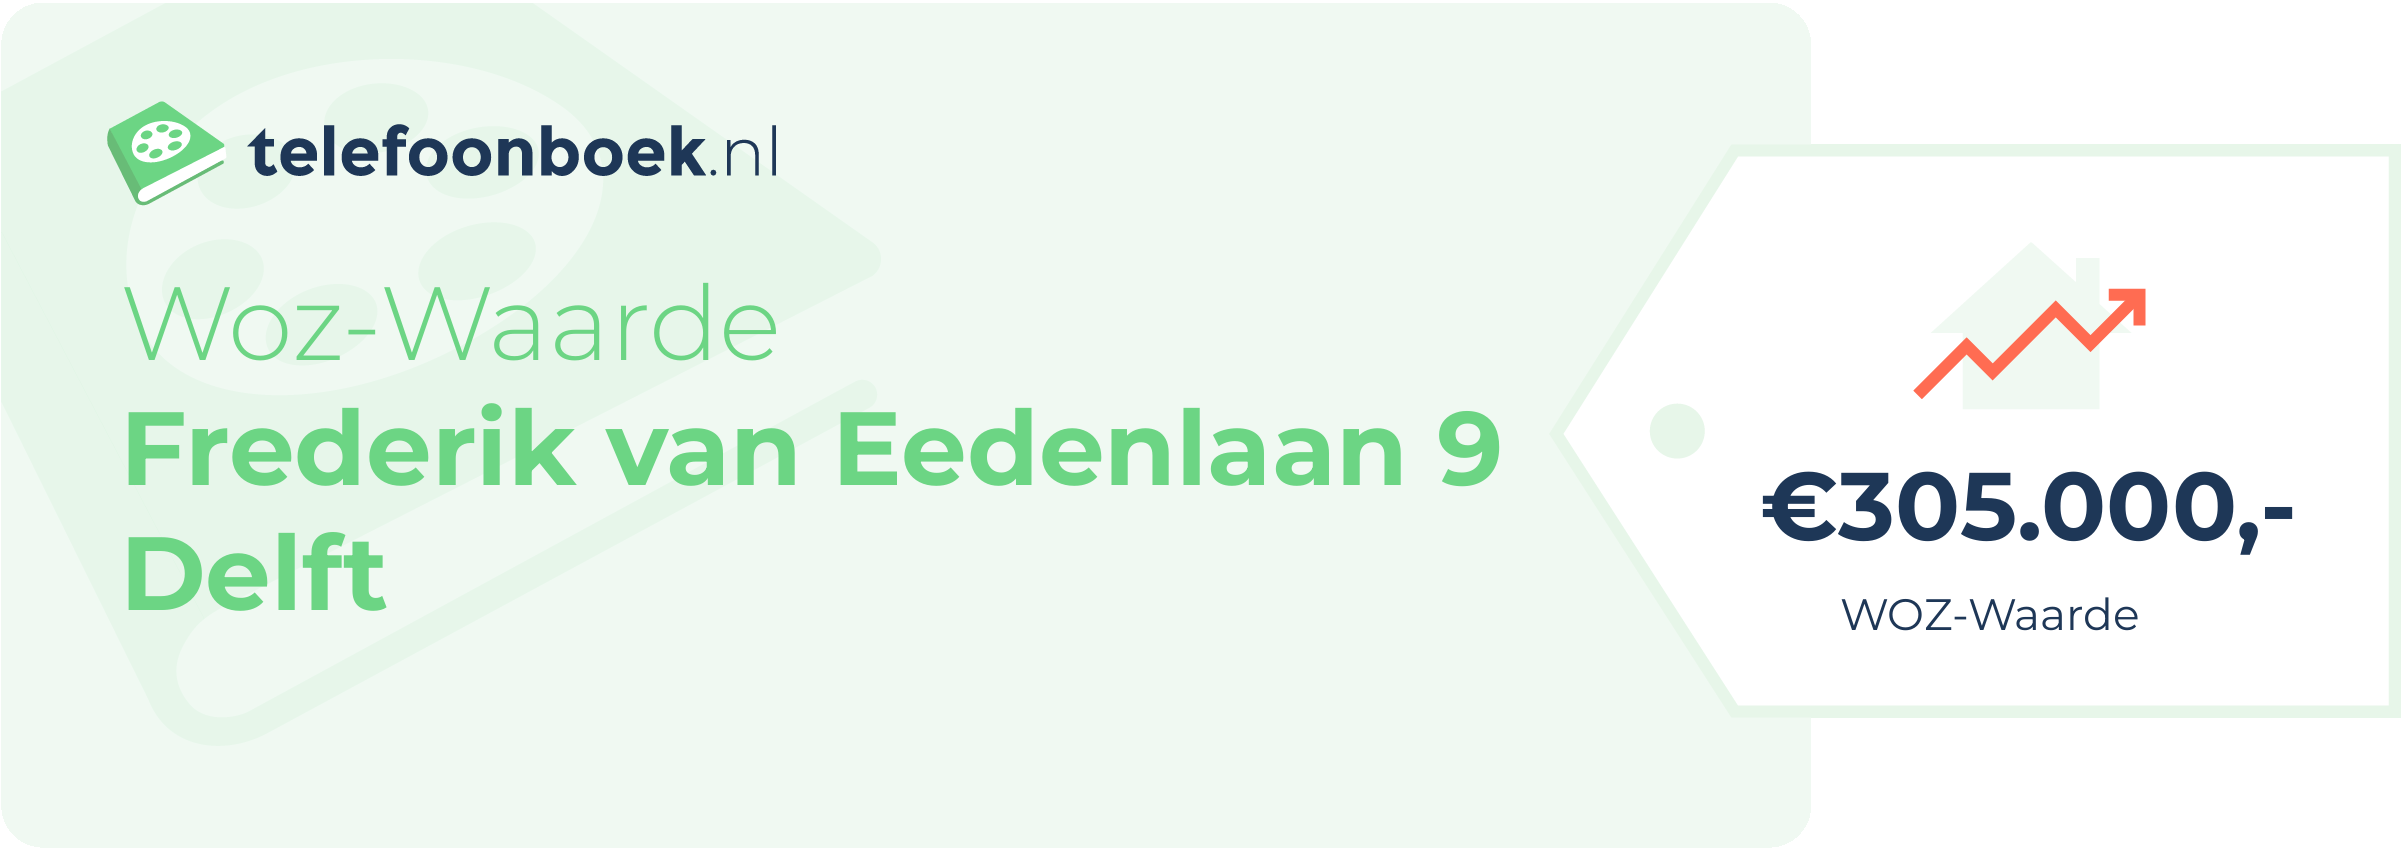 WOZ-waarde Frederik Van Eedenlaan 9 Delft